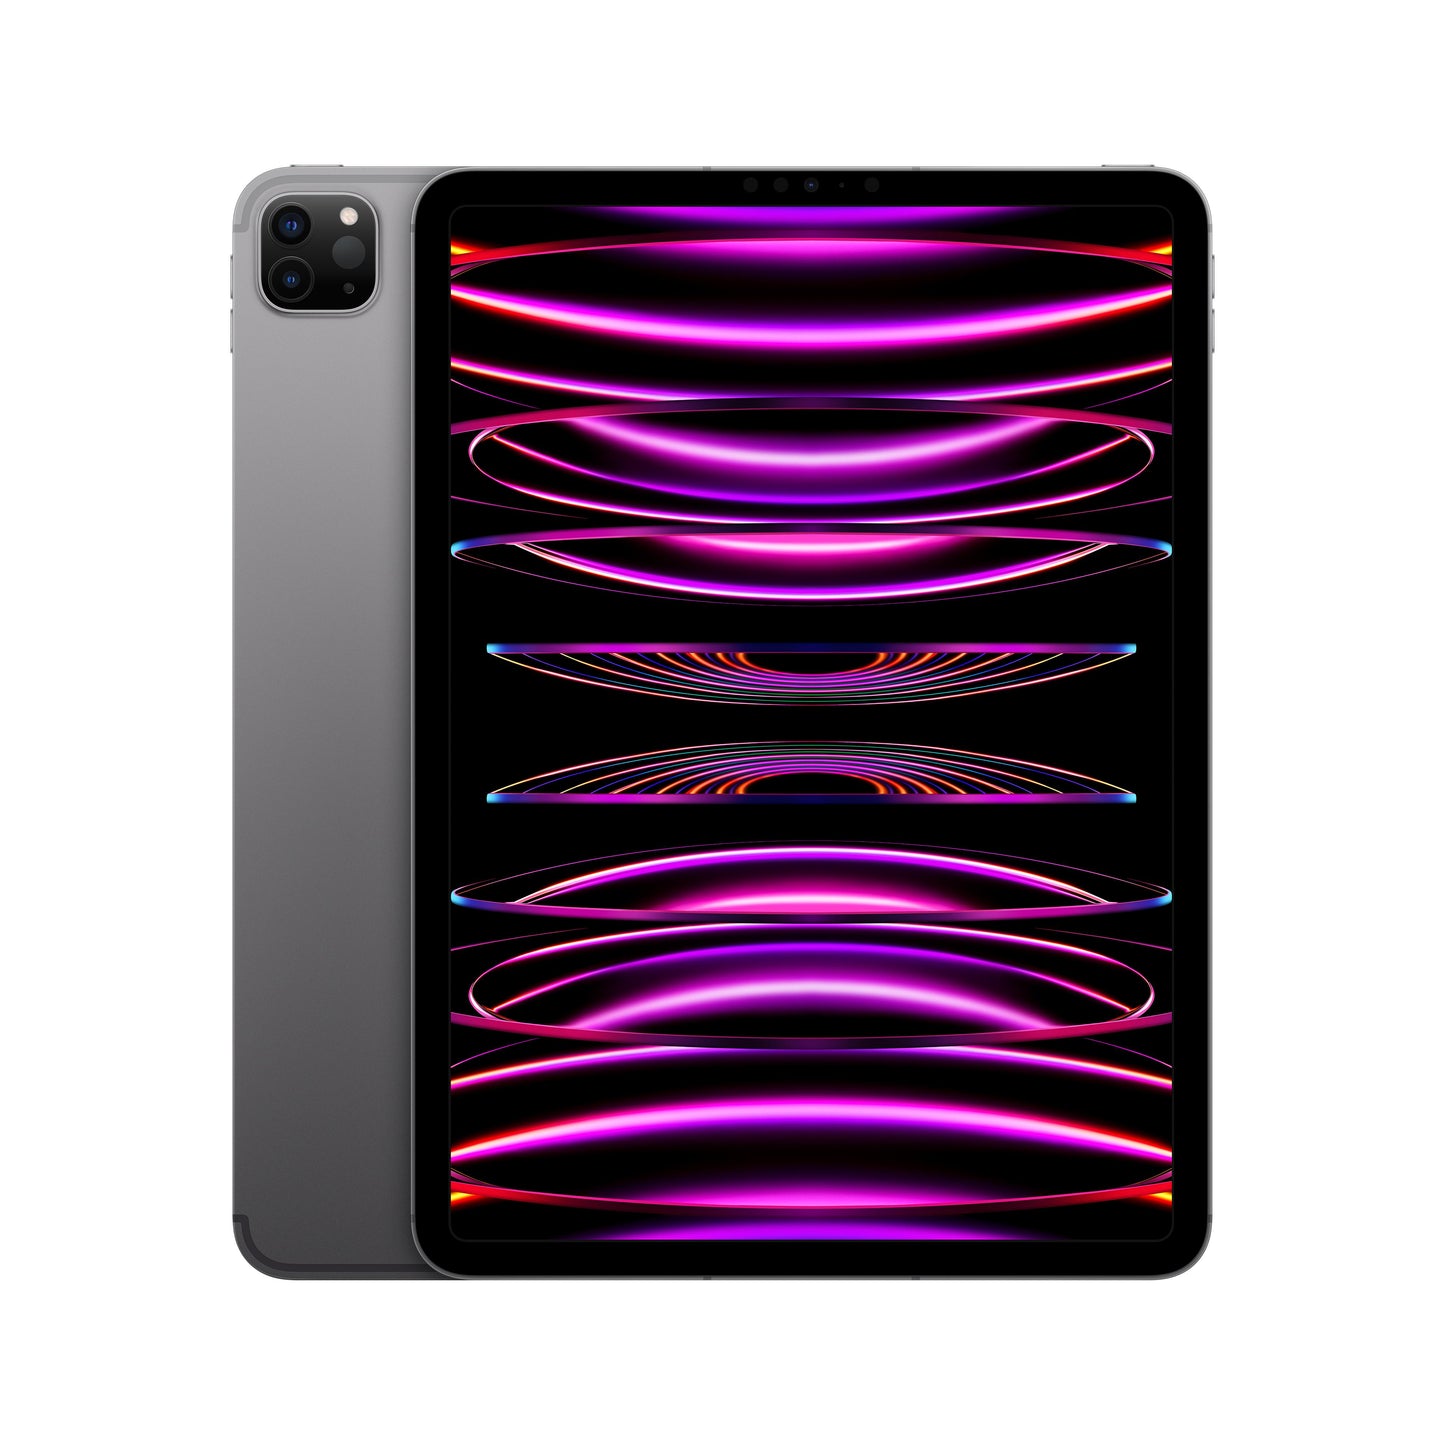 11-inch iPad Pro (4th Gen) Wi-Fi + Cellular 1TB - Space Grey